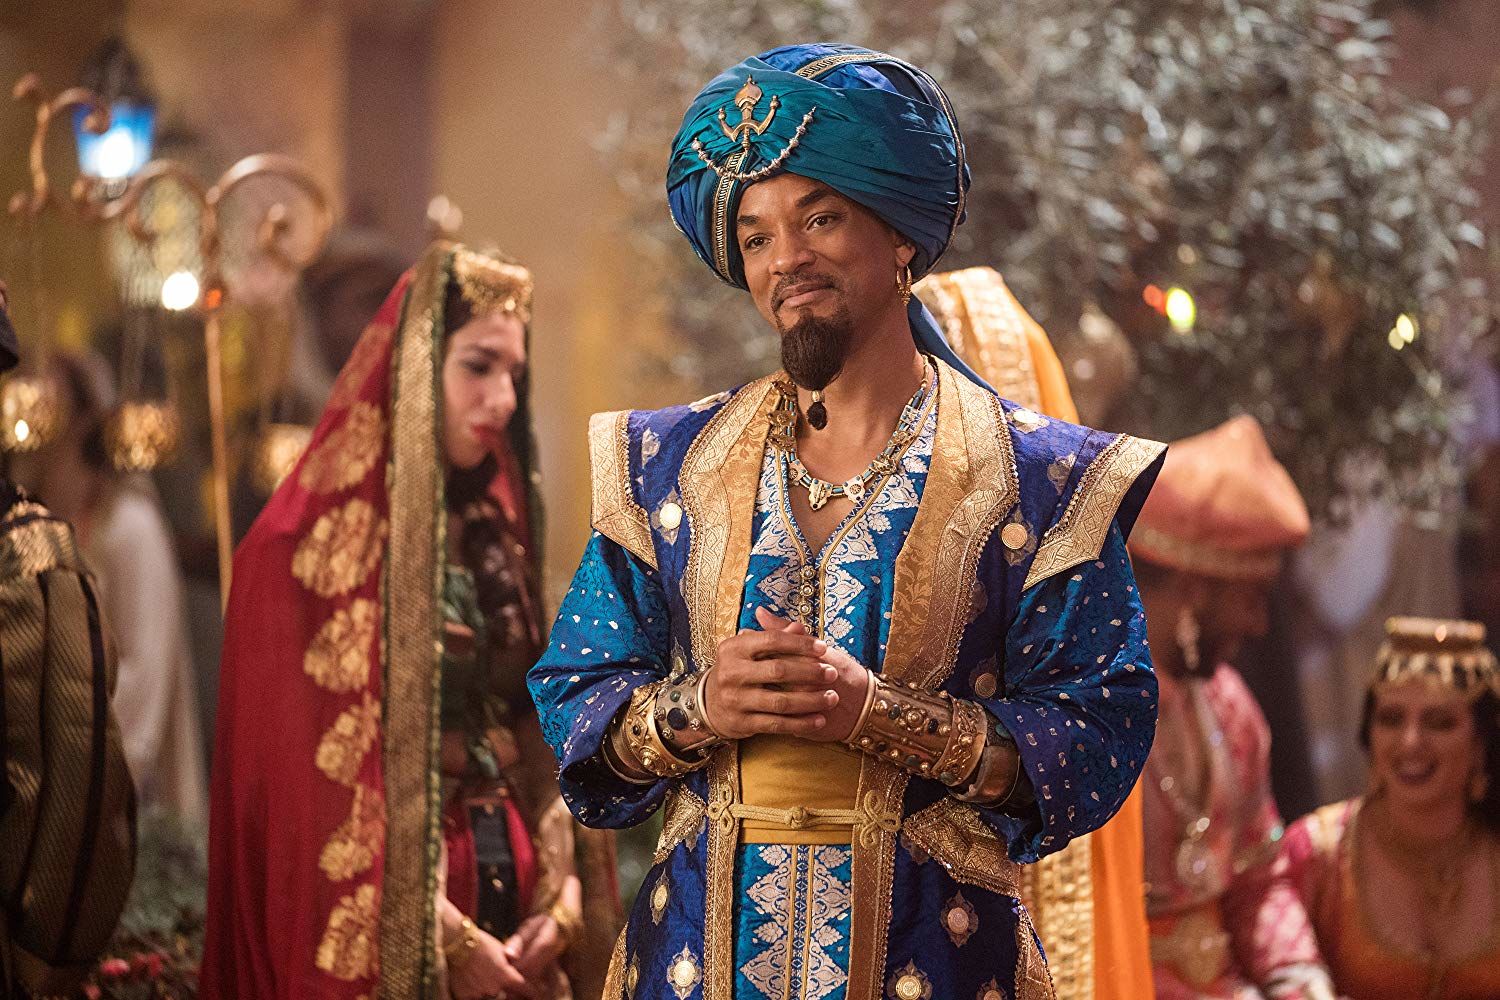 The Genie in Aladdin 2019